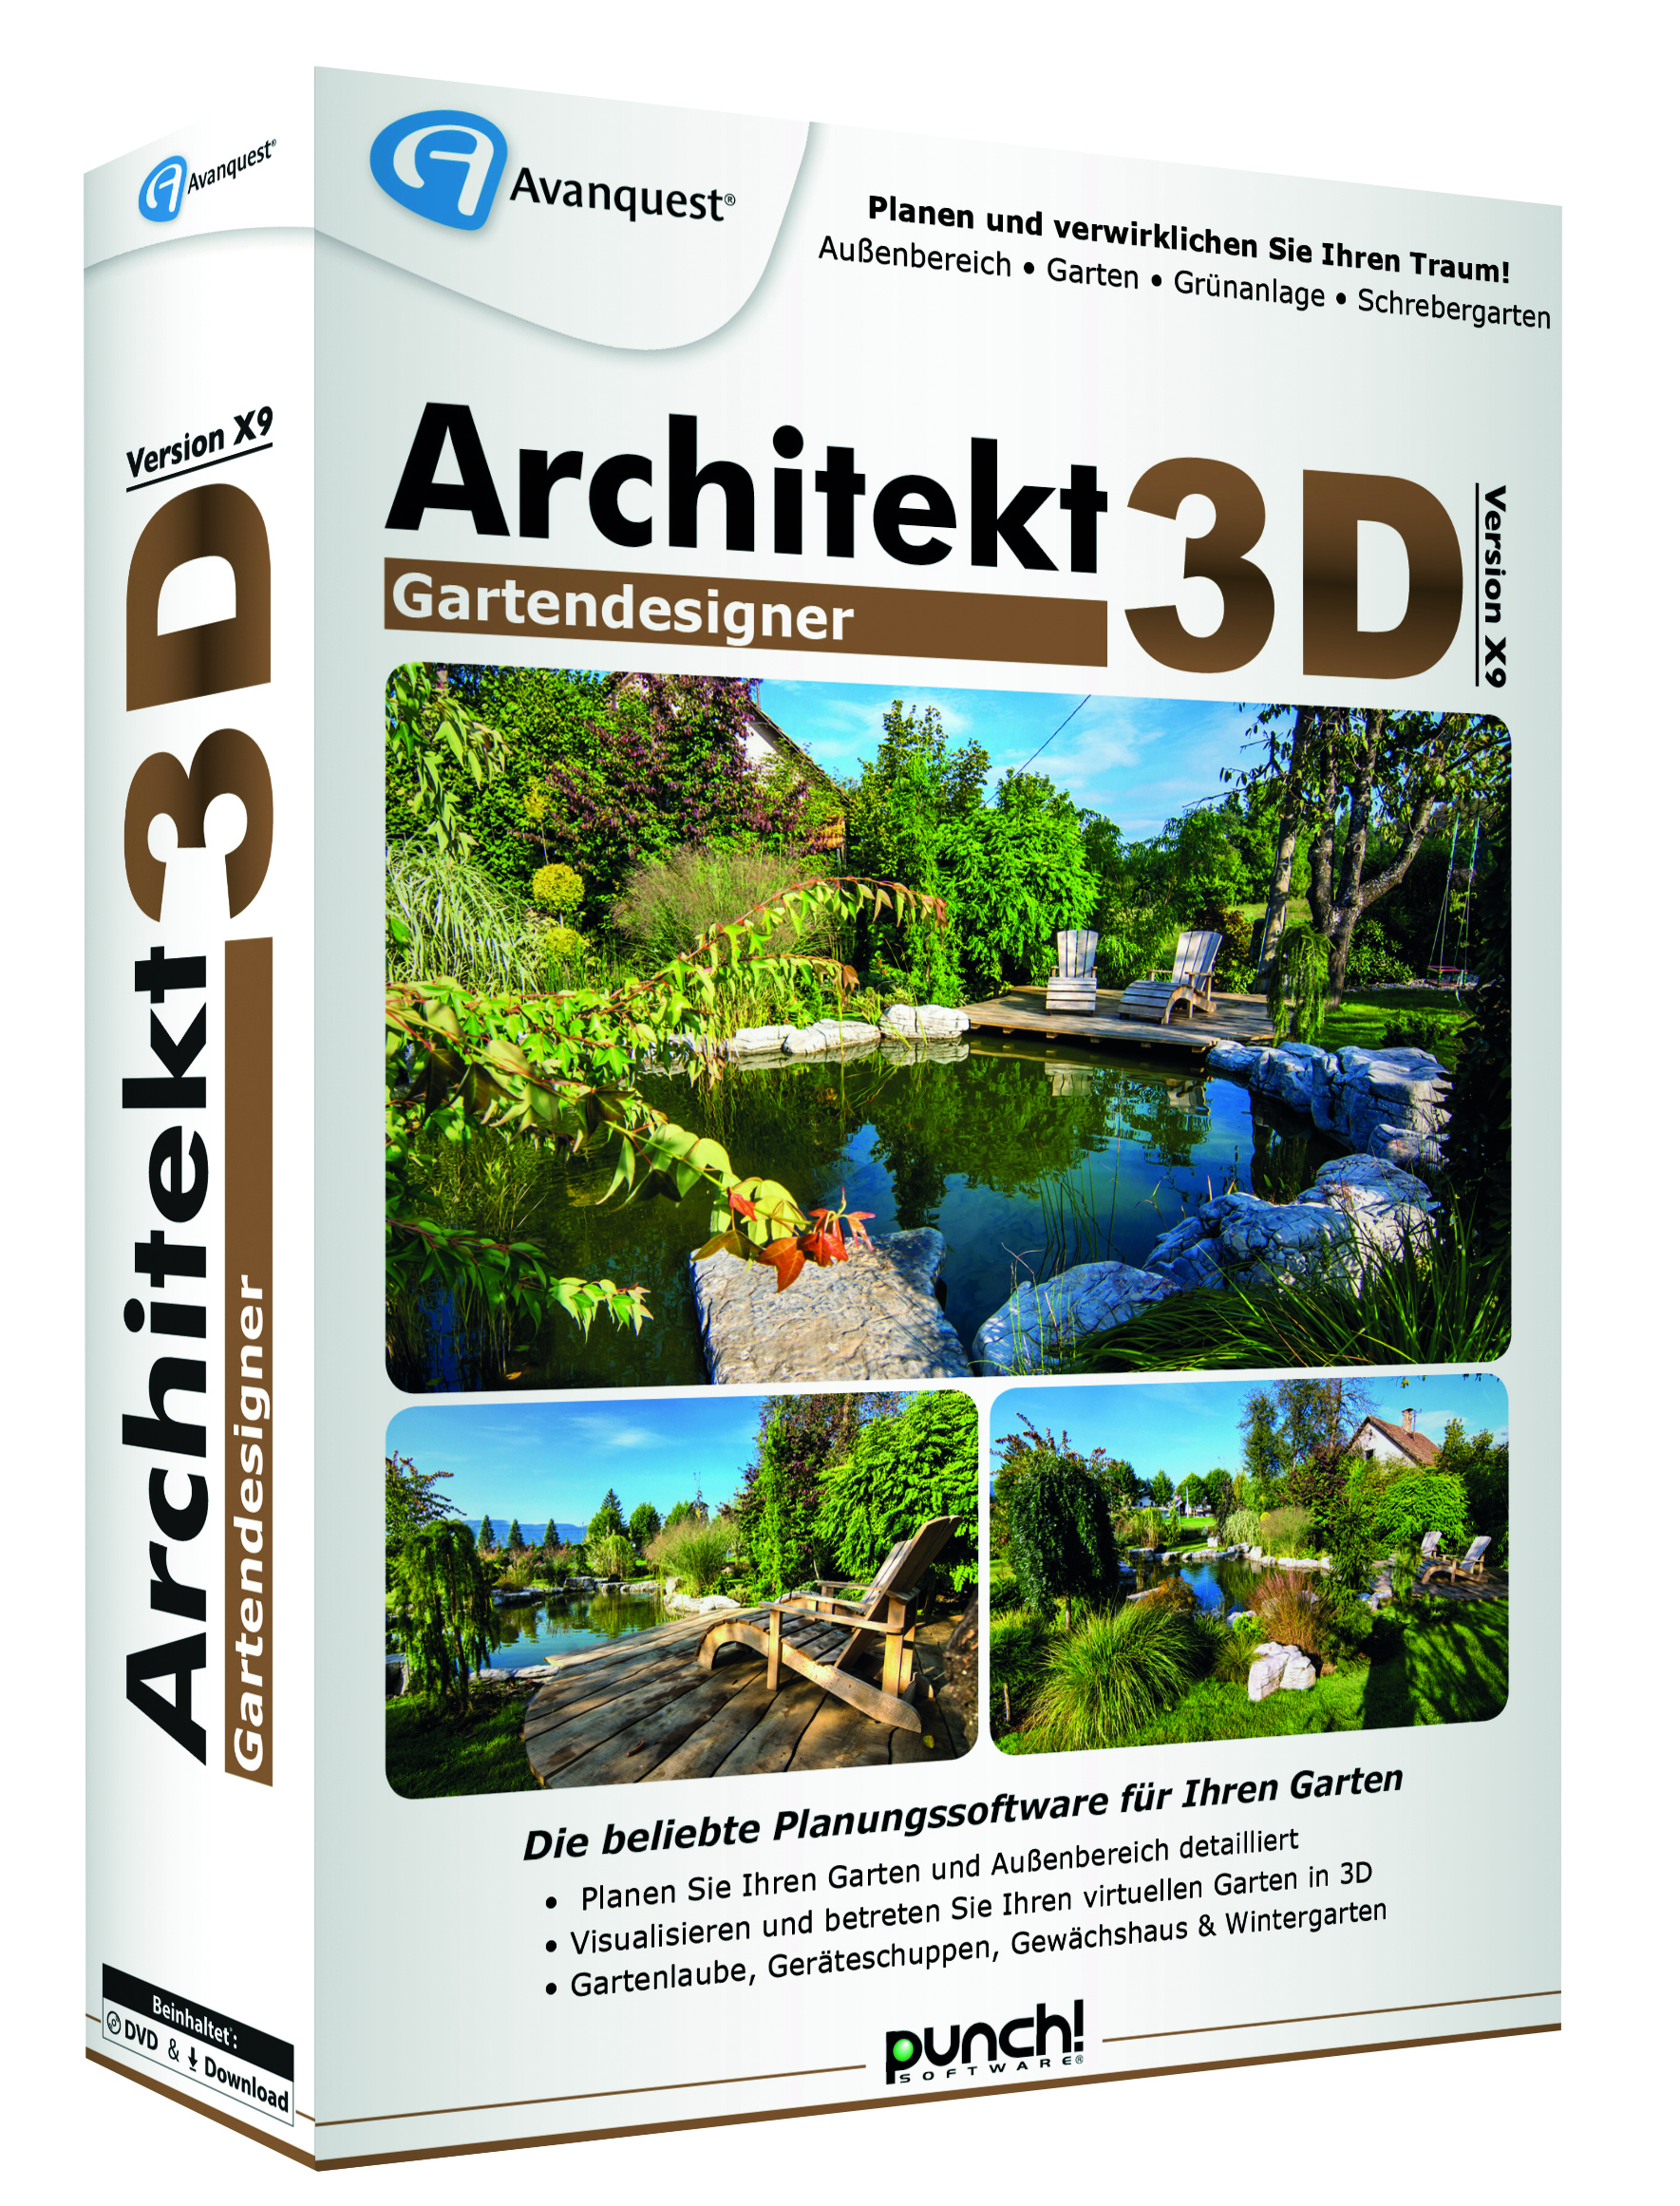 Architekt 3D Gartendesigner X9 3D links 300dpi CMYK